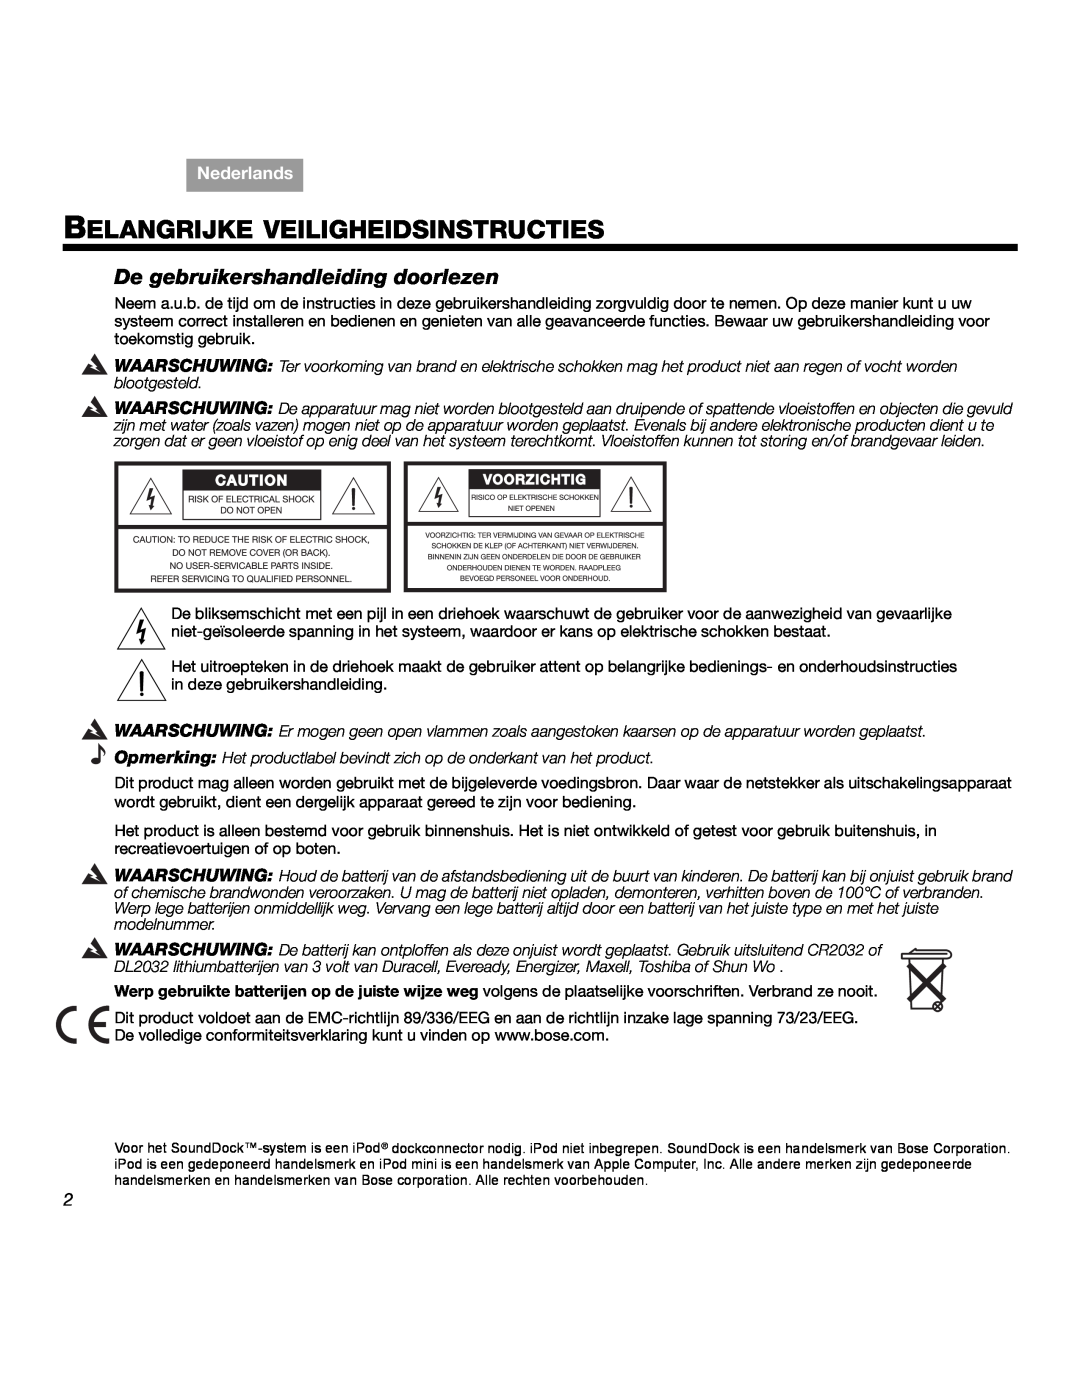 Bose SOUNDDOCKTM manual Belangrijke Veiligheidsinstructies, De gebruikershandleiding doorlezen, Nederlands 